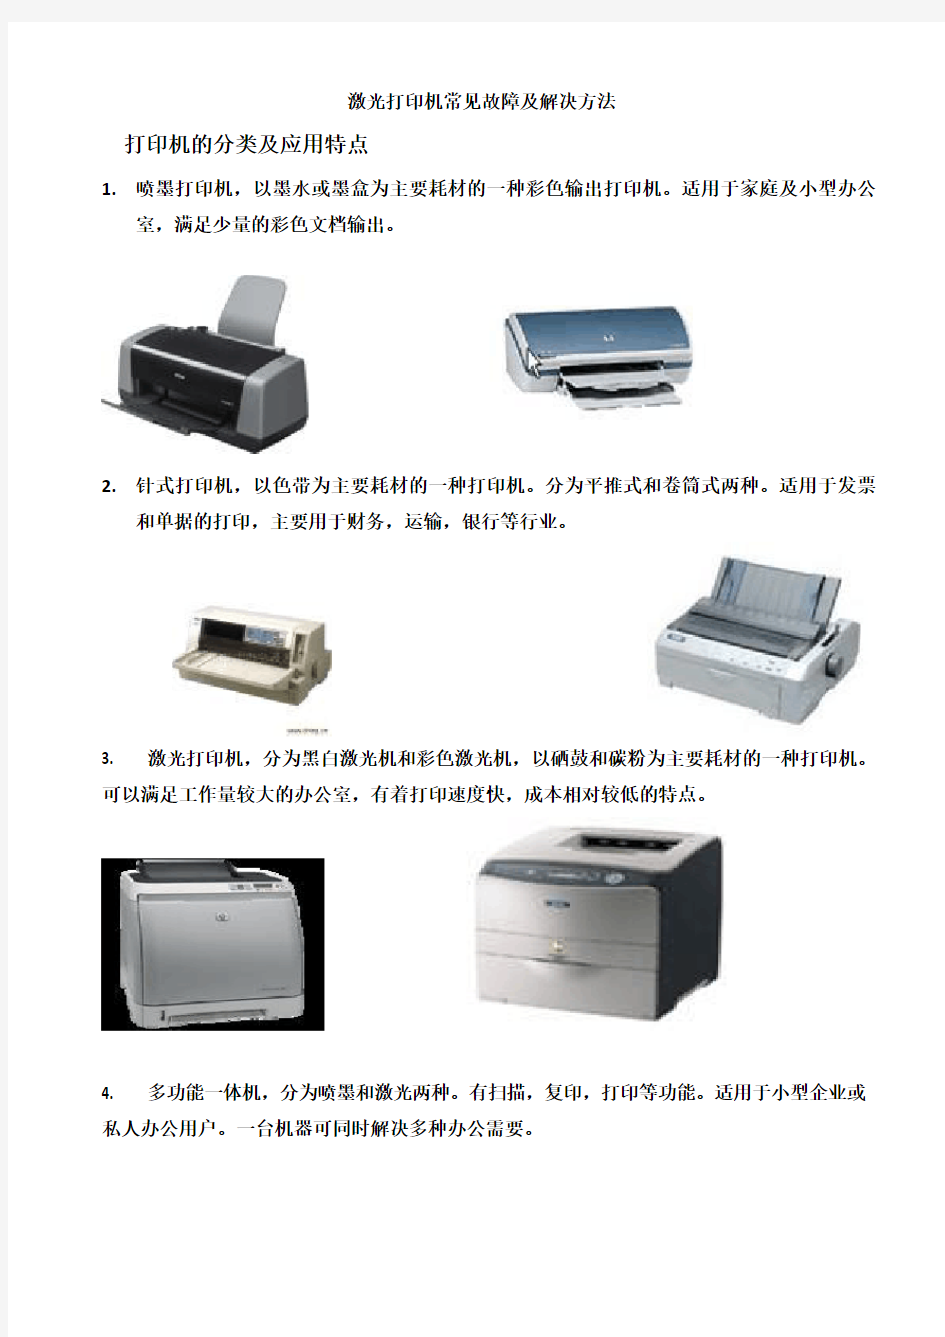 打印机常见故障及解决方法